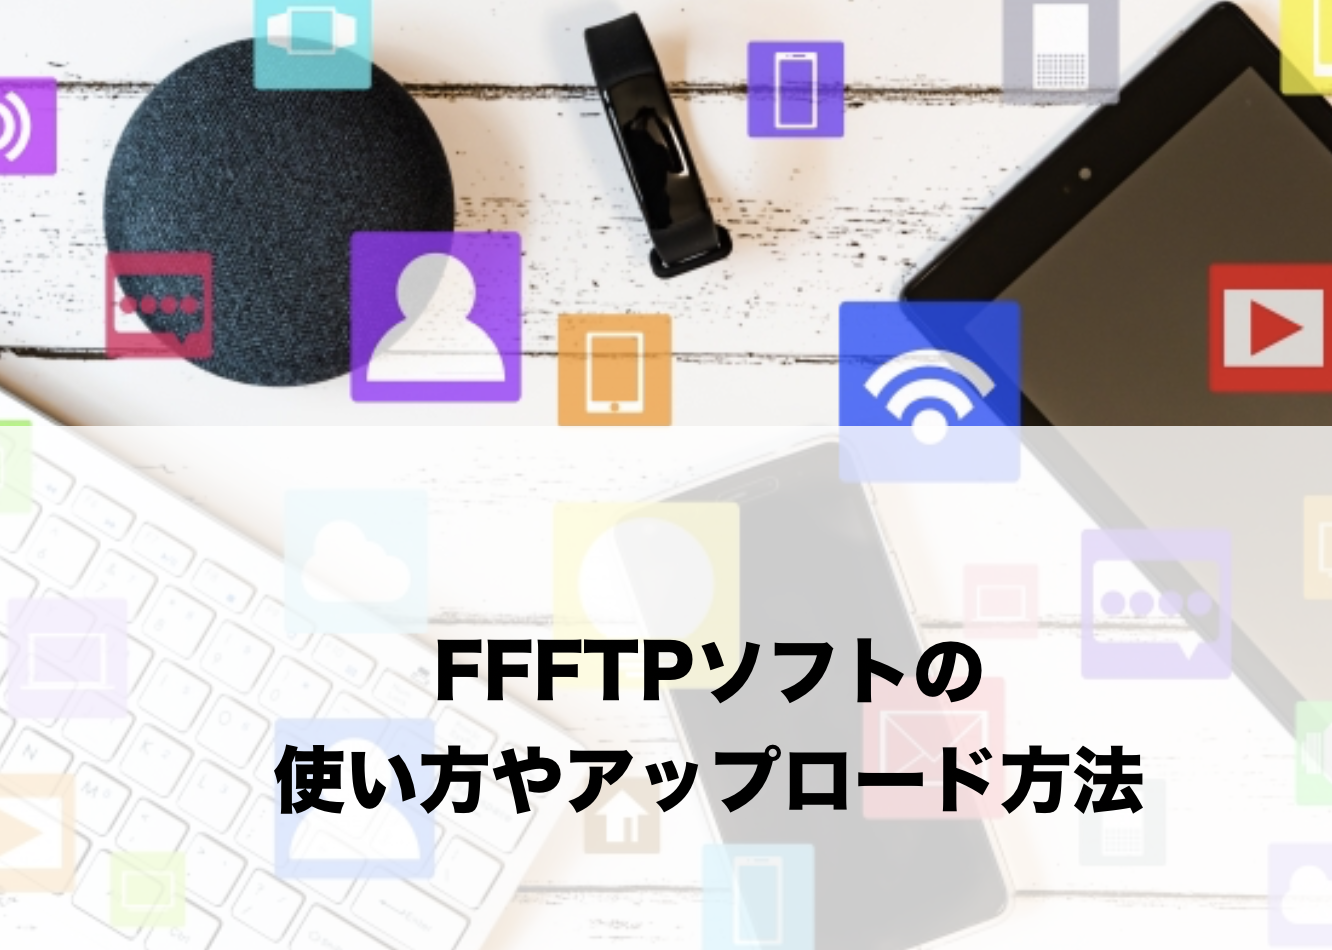 FFFTPソフトの使い方やアップロード方法に関する参考画像